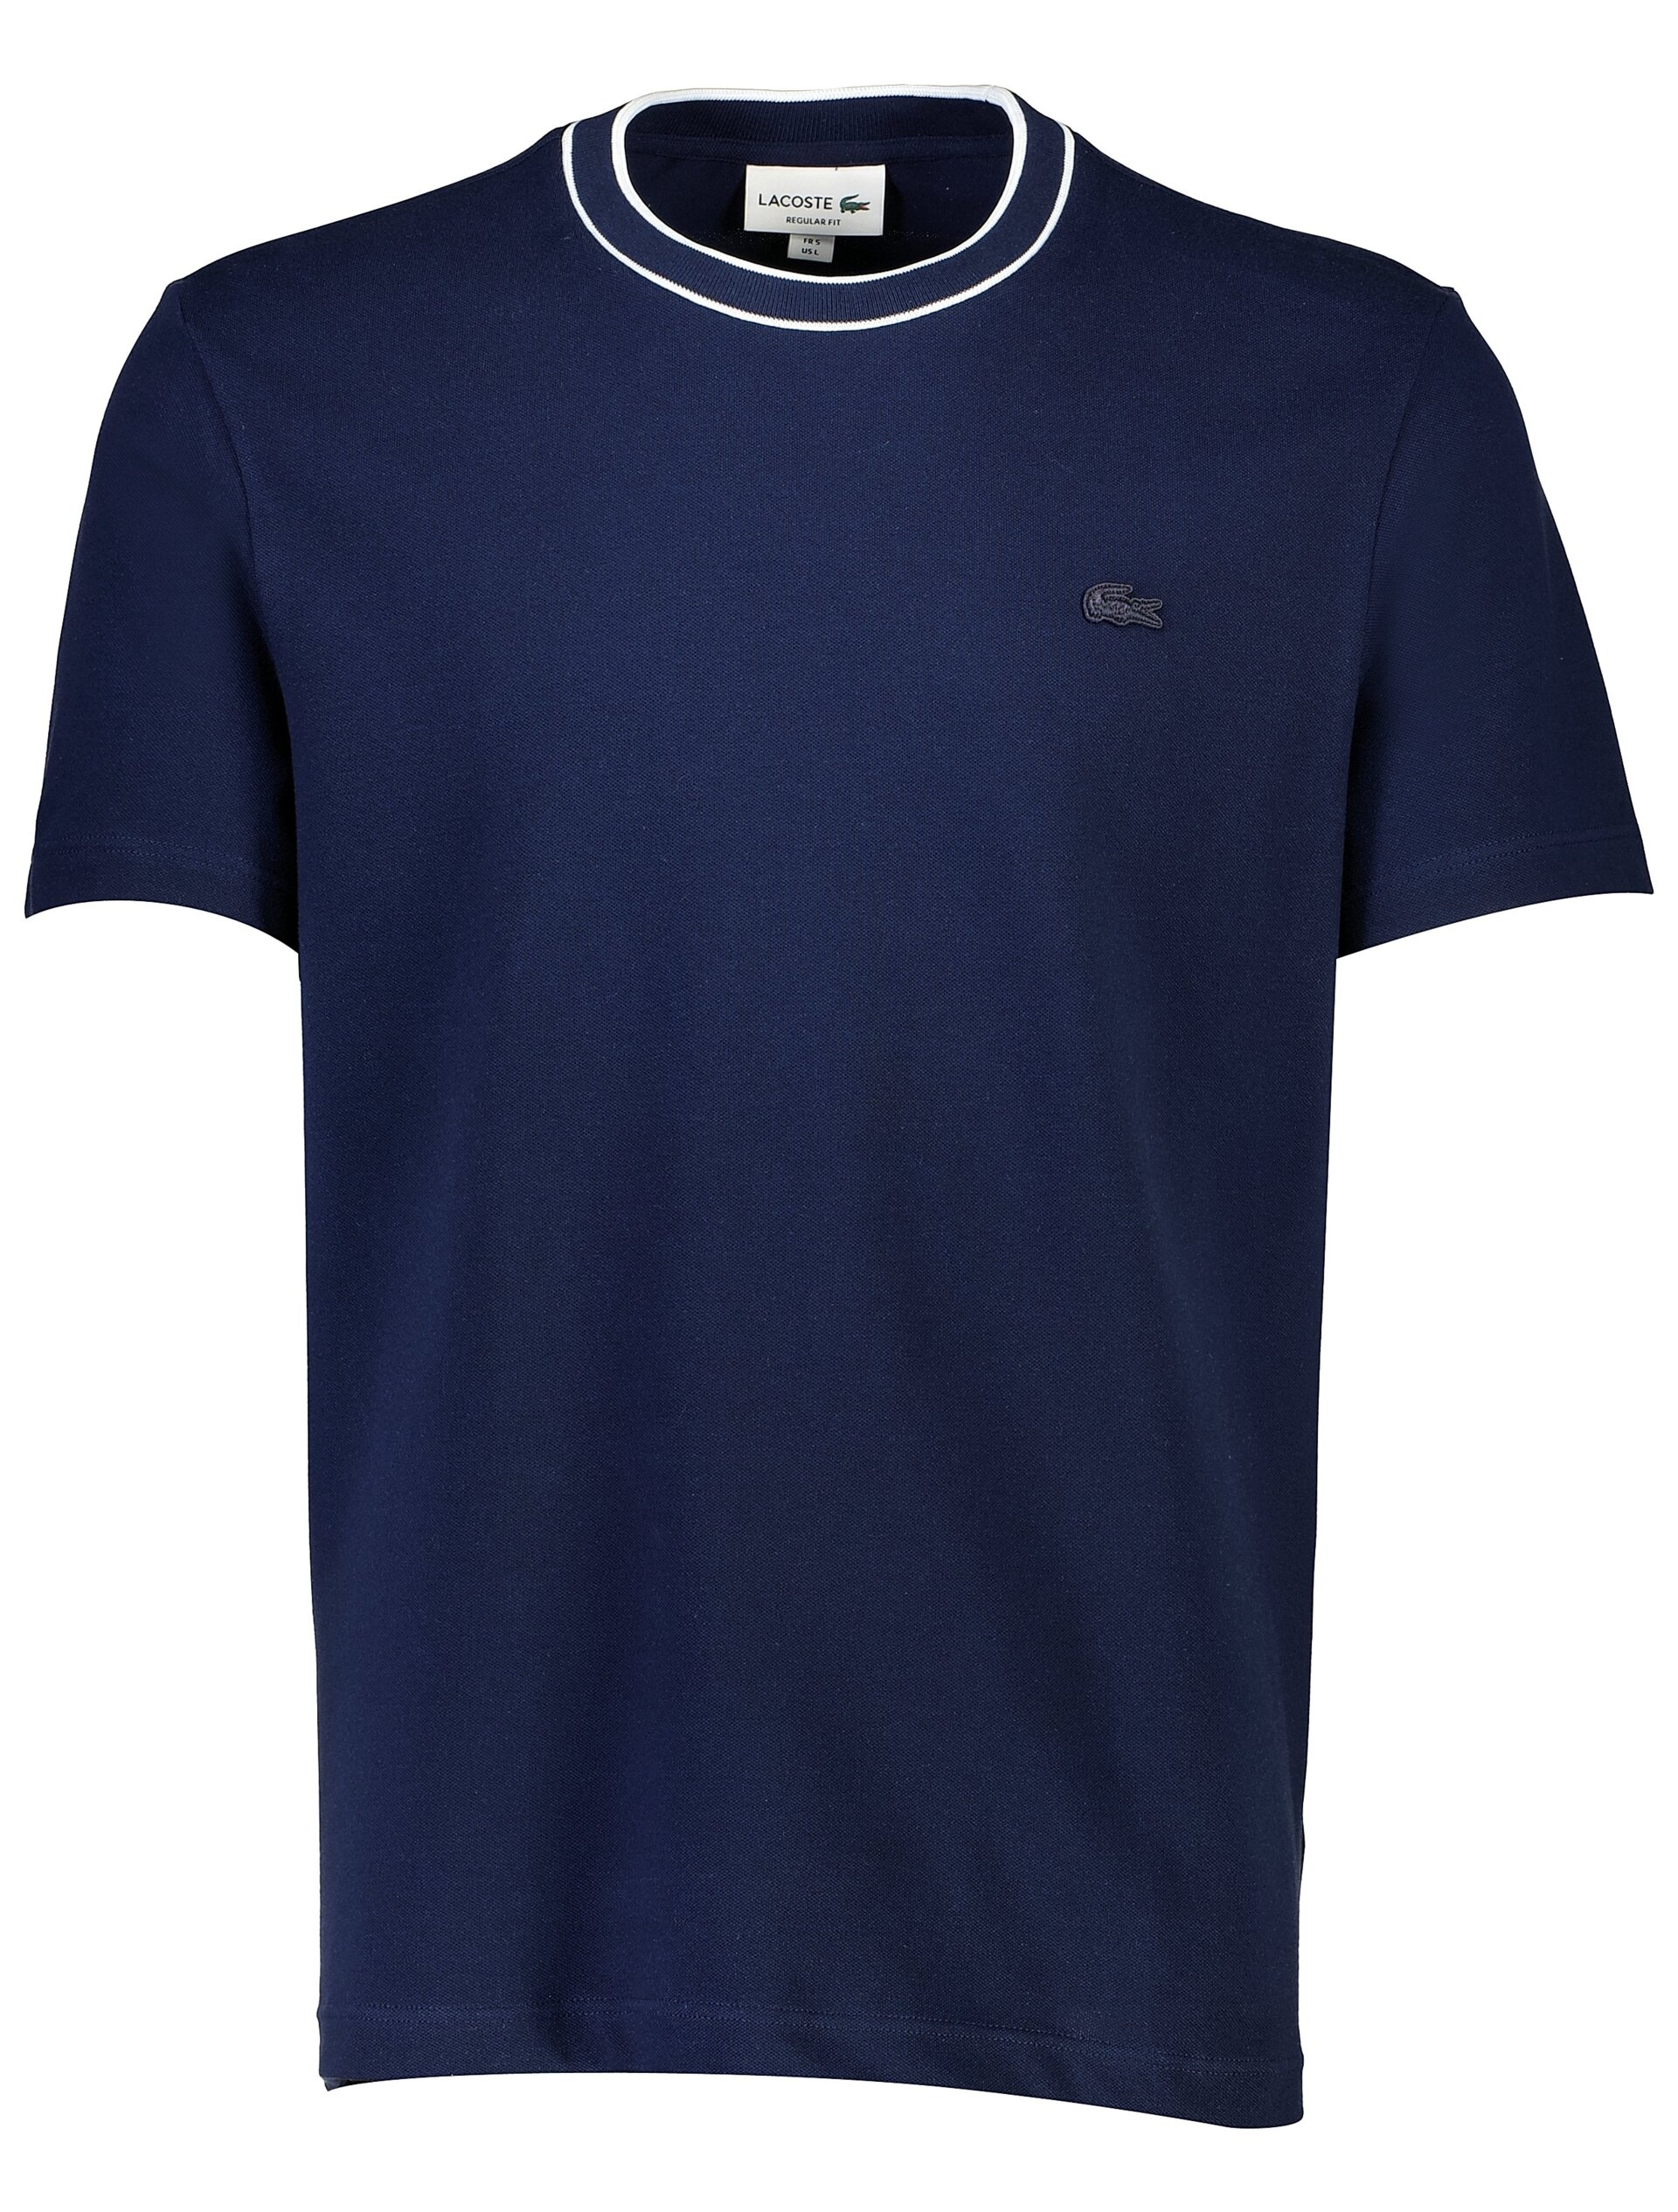 Lacoste T-shirt blå / 166 navy